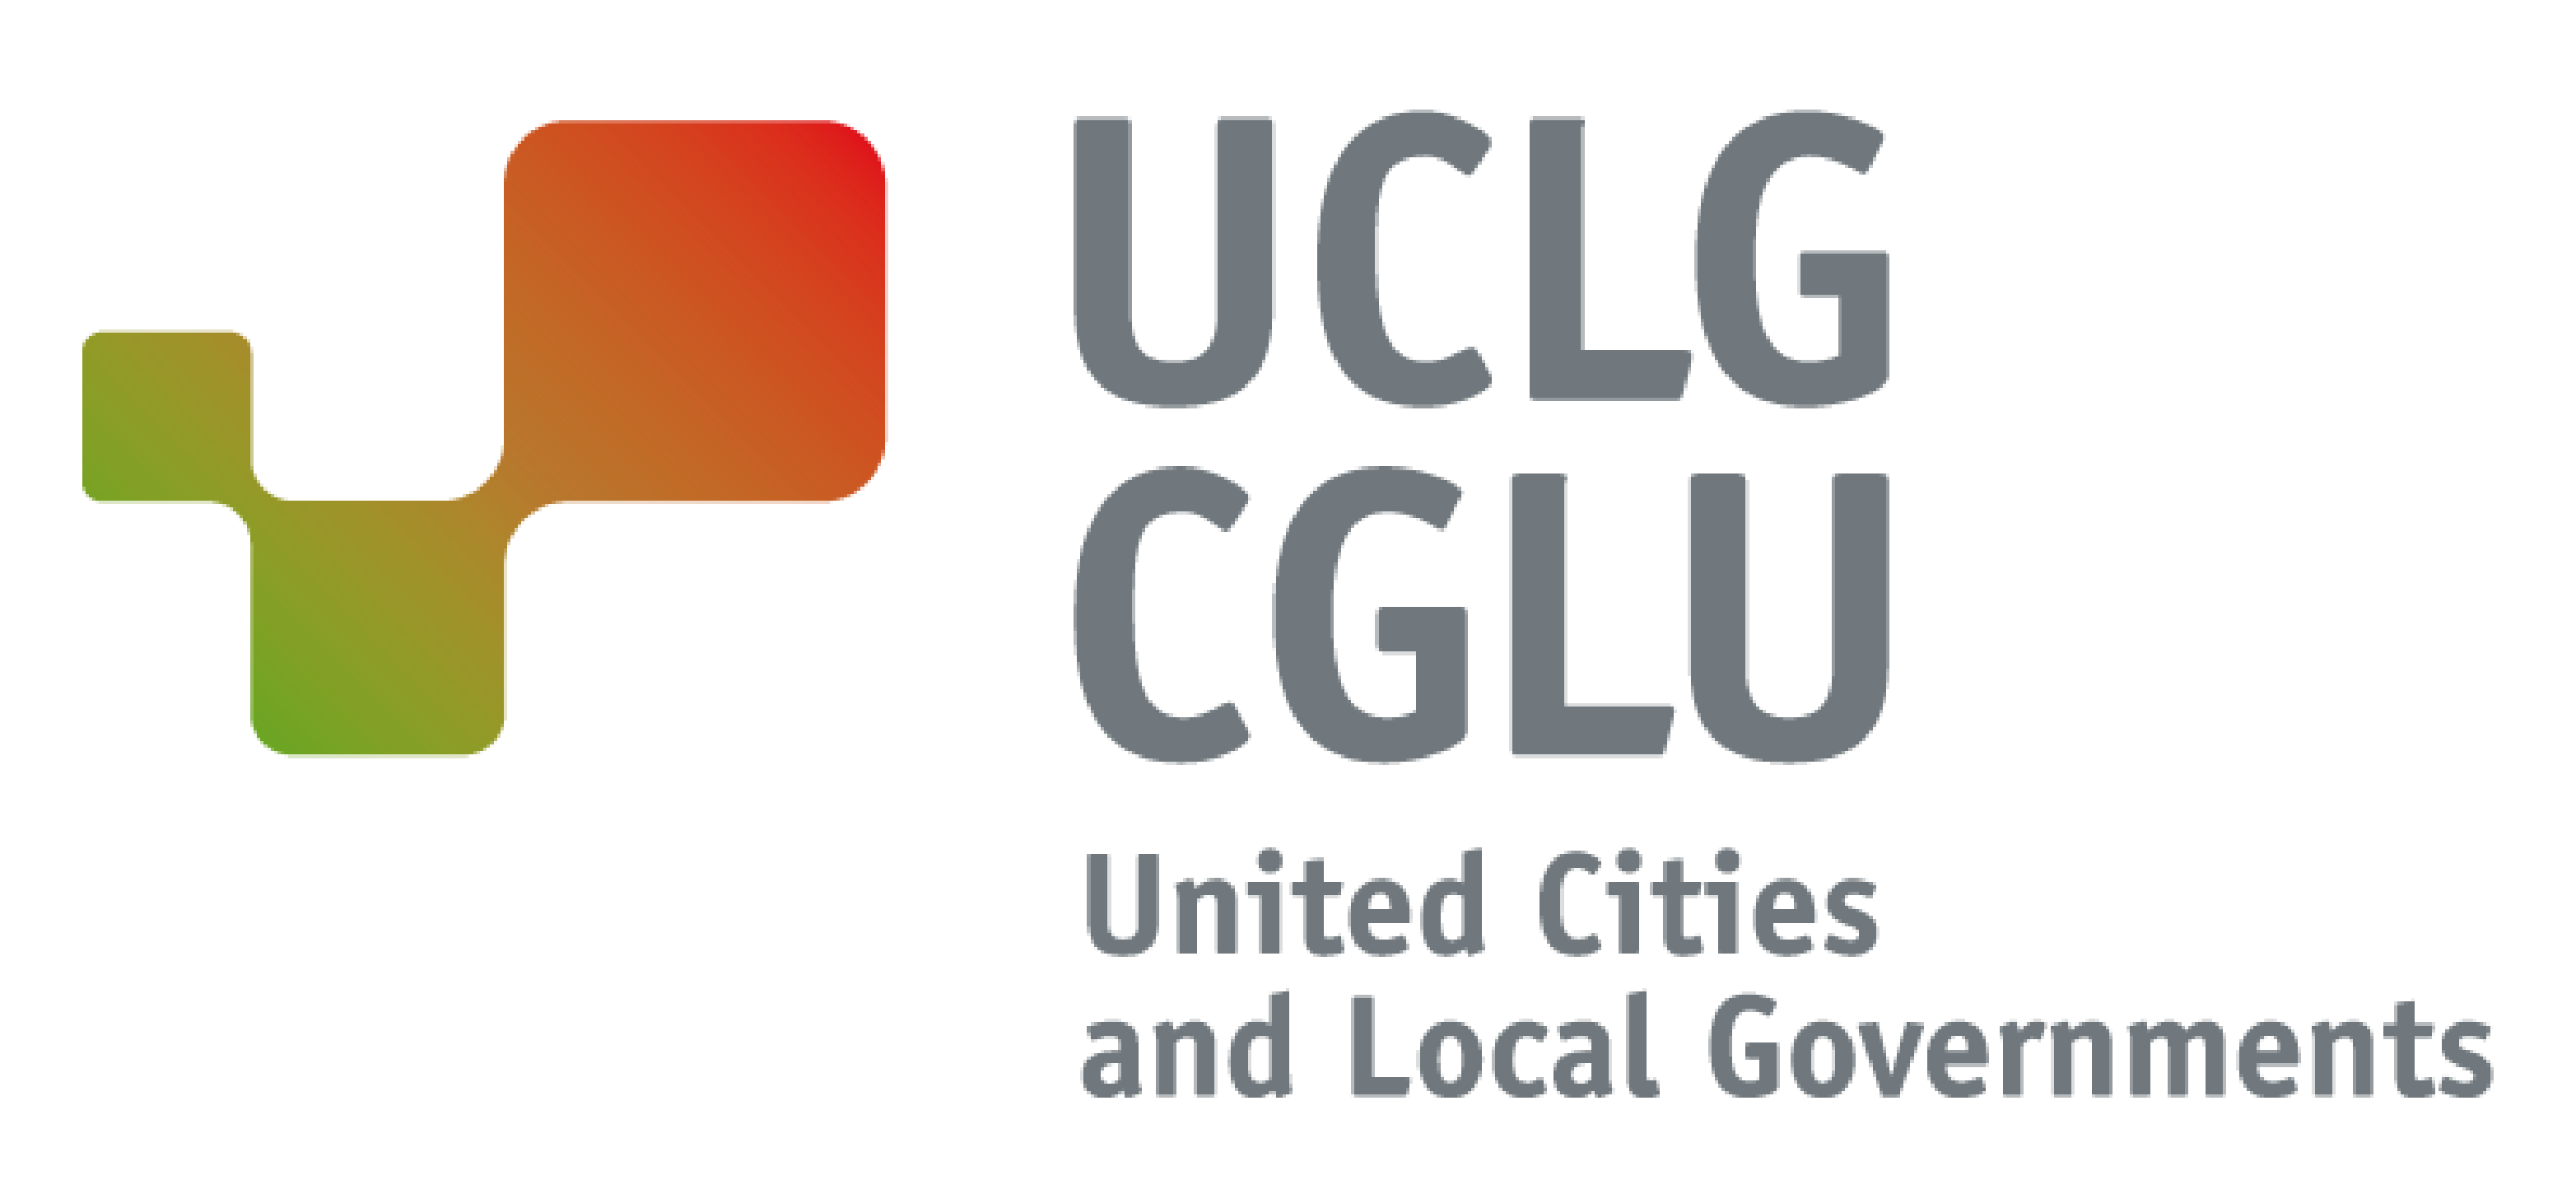 Ciudades y gobiernos locales unidos